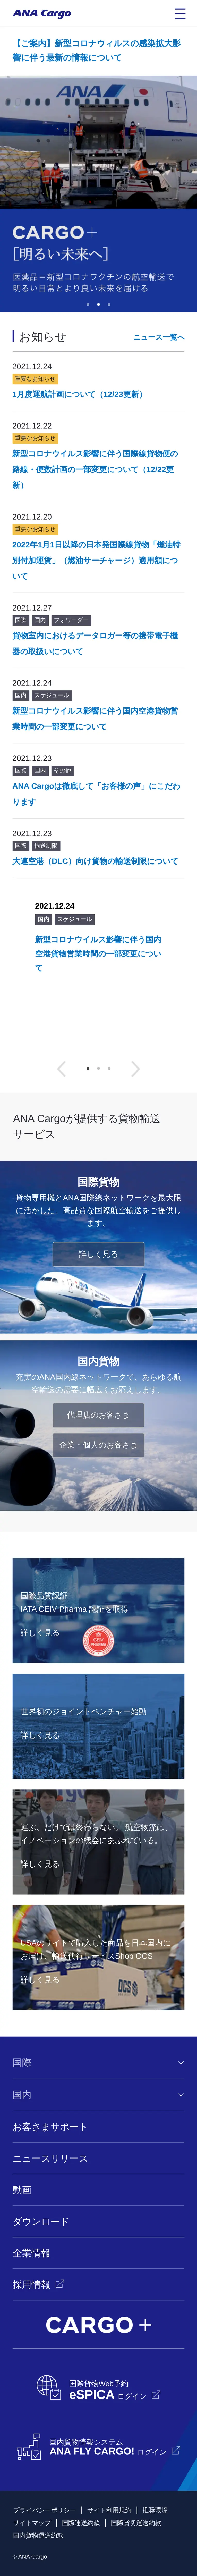 キャプチャ画面 会社名:株式会社ANA Cargoプロジェクト名:ANA Cargo 画面名:A デバイス名:SPカテゴリ:航空・空港・陸運・海運タグ:SP